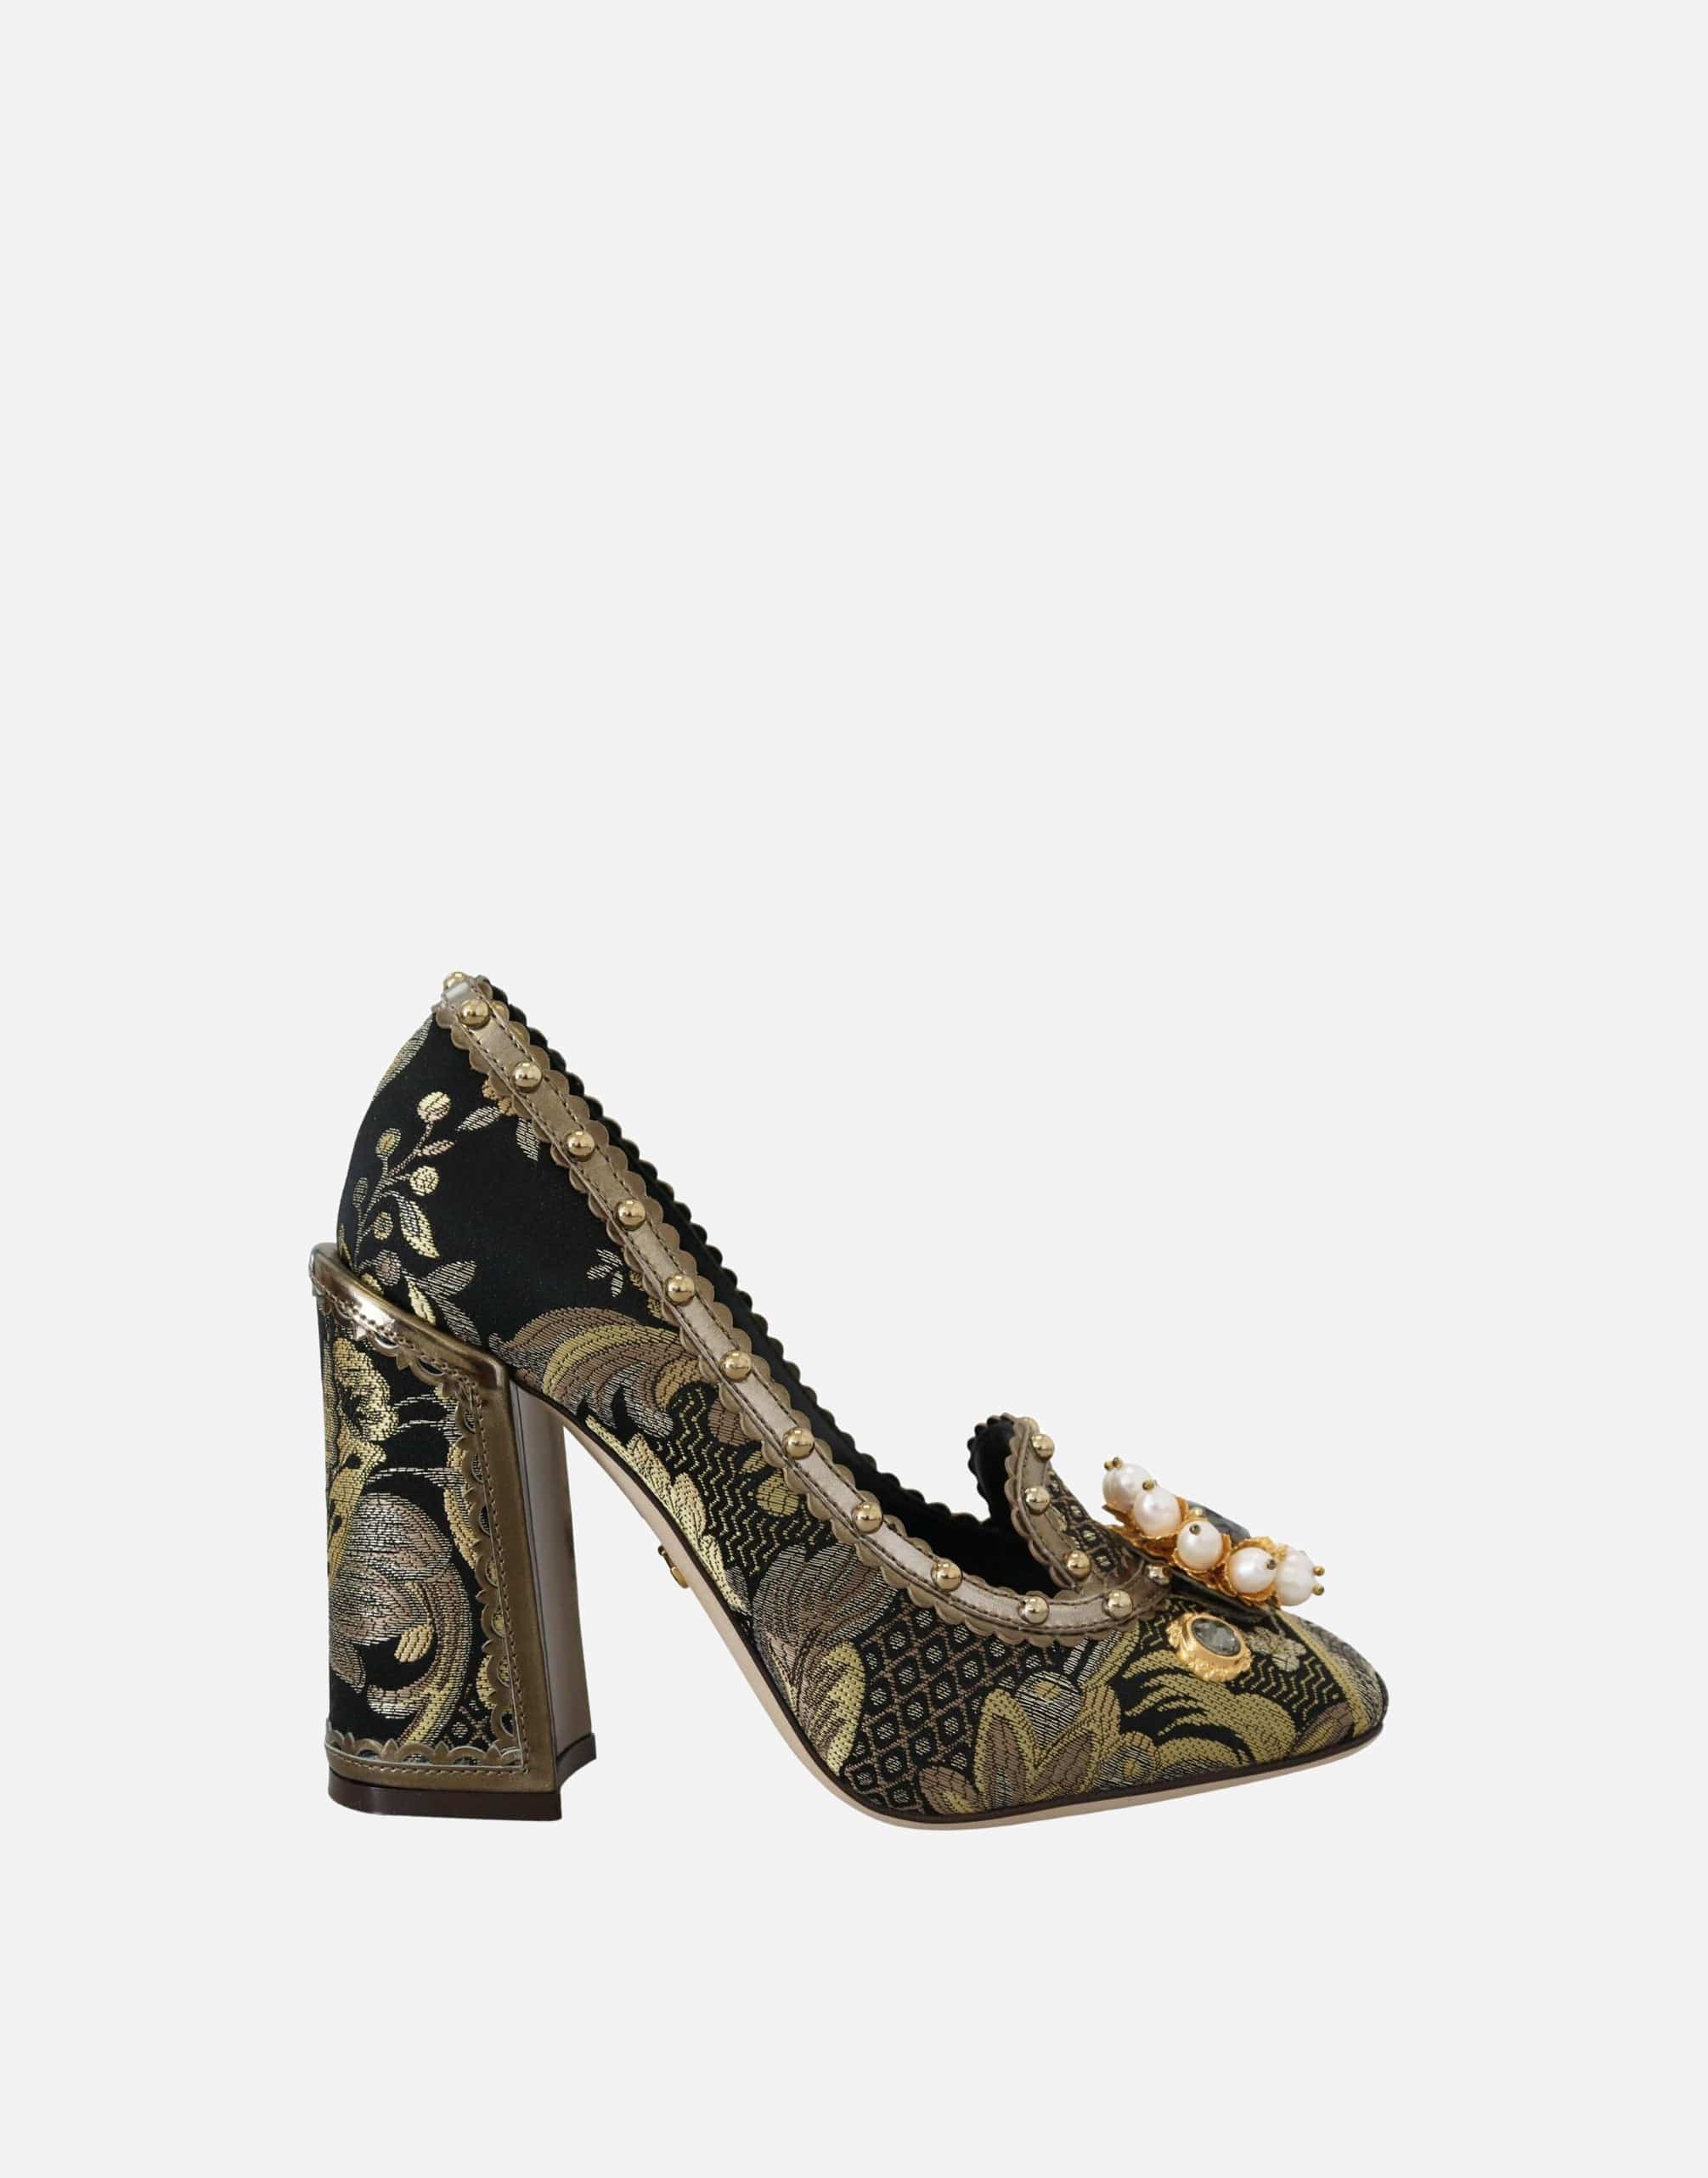 Dolce & Gabbana Crystal Embellished Square Toe Sandals